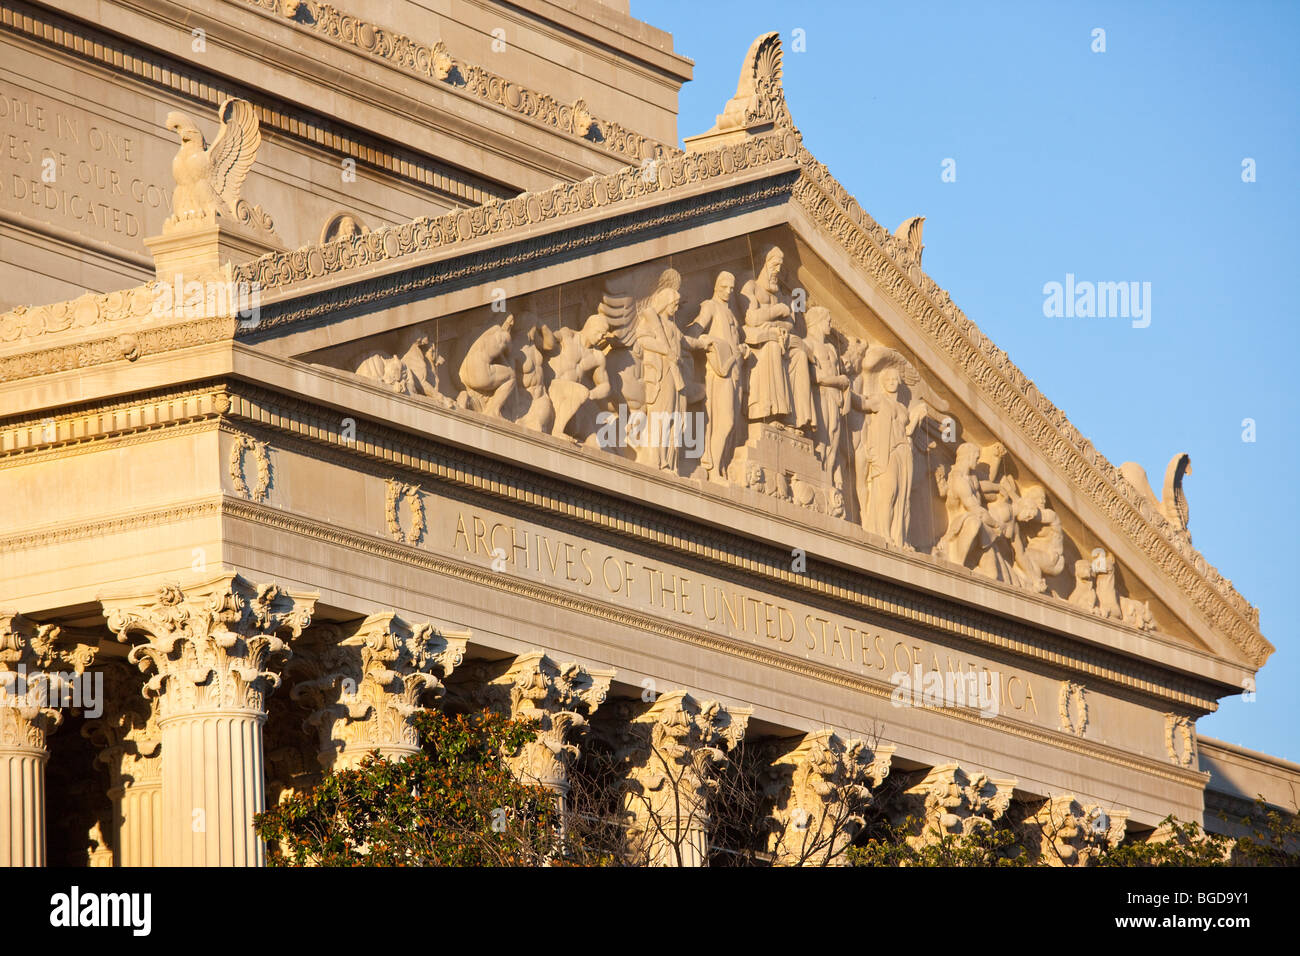 Archiv der Vereinigten Staaten von Amerika-Gebäude in Washington, D.C. Stockfoto